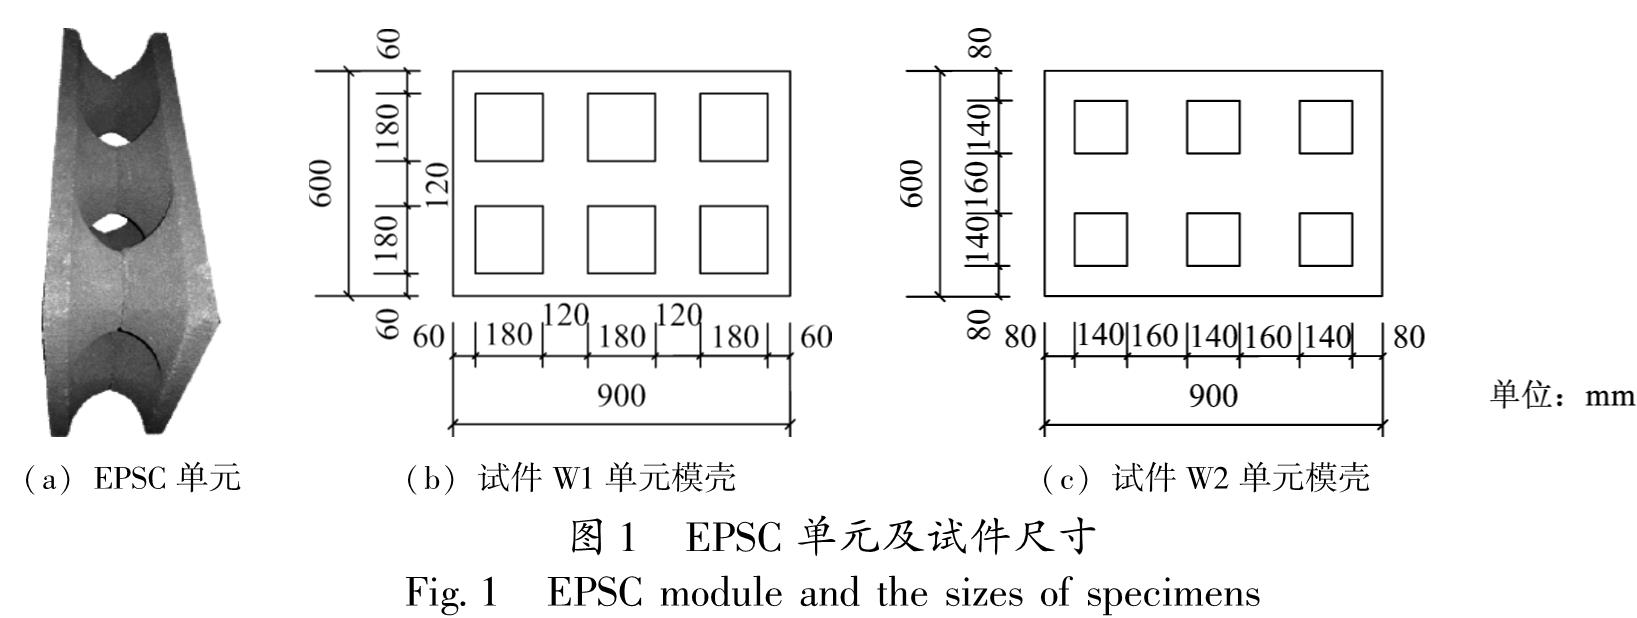 图1 EPSC单元及试件尺寸<br/>Fig.1 EPSC module and the sizes of specimens